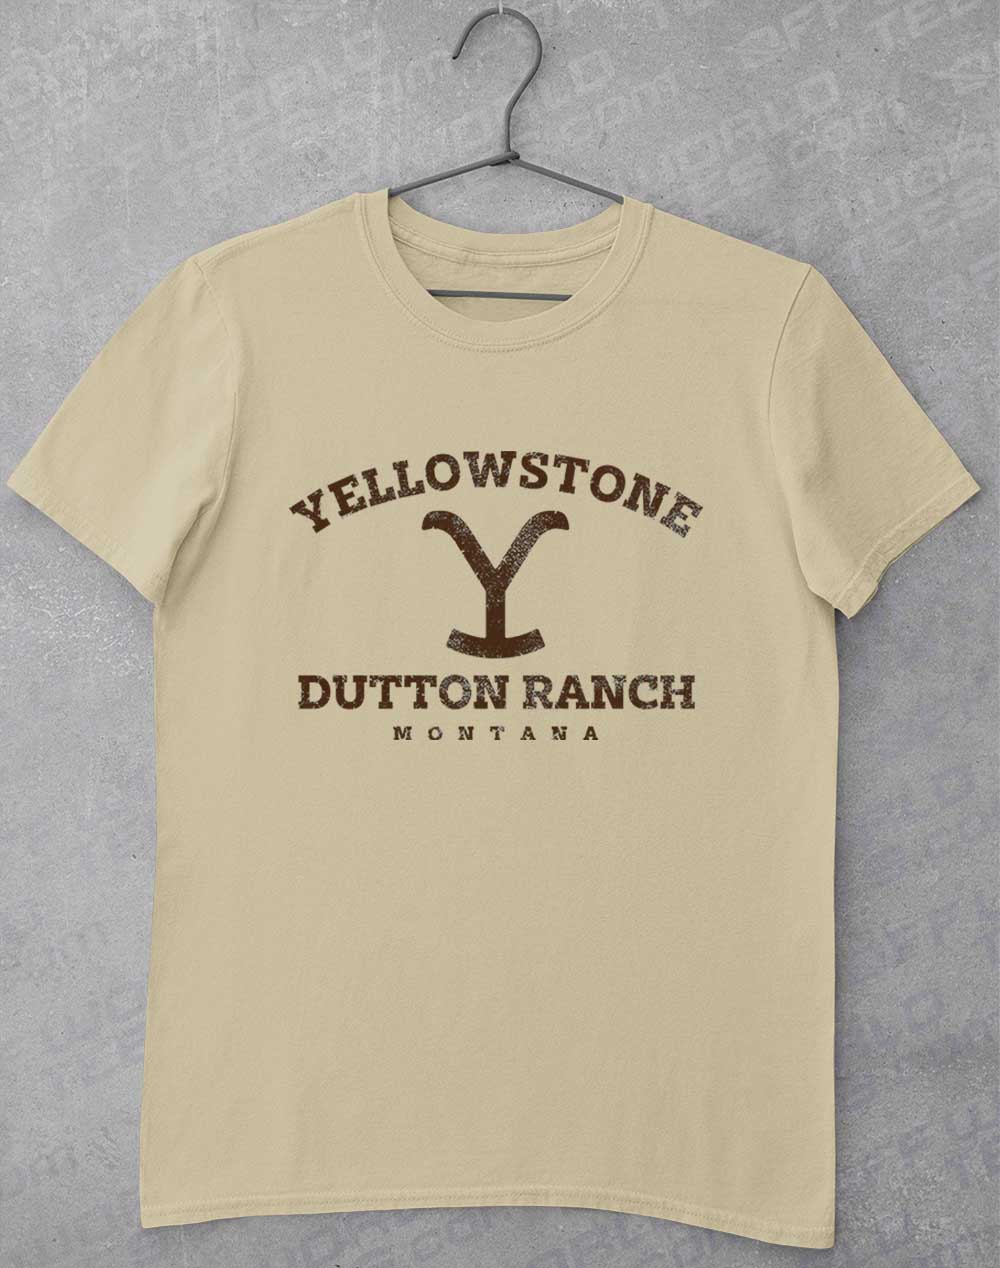 Sand - Dutton Ranch Montana T-Shirt